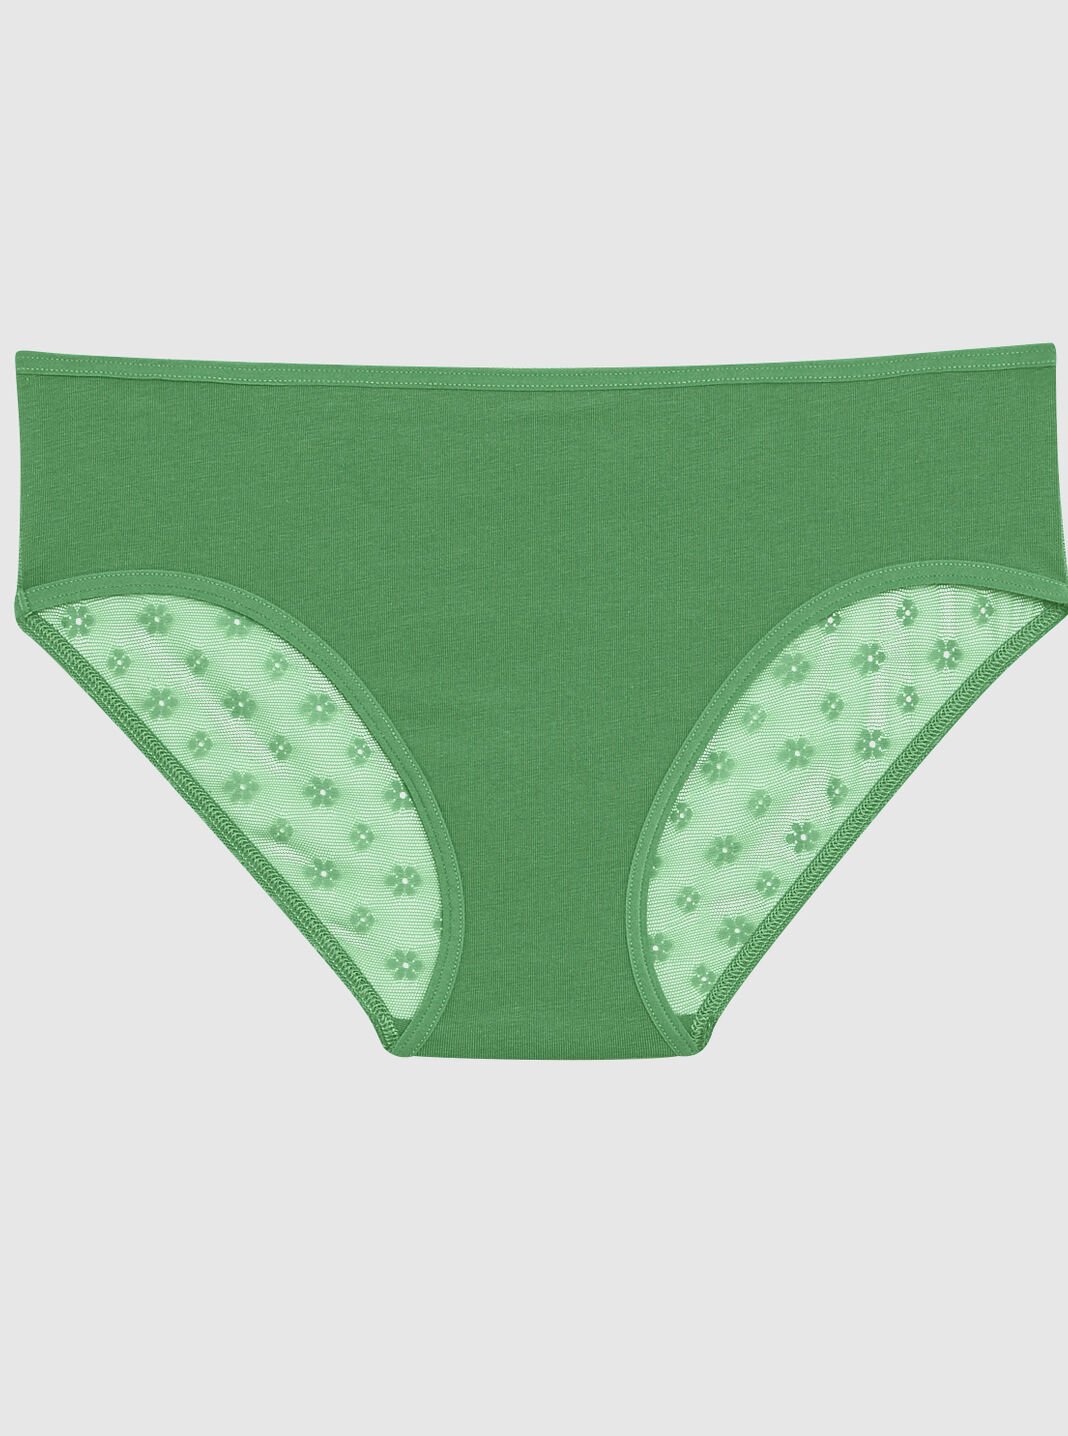 Sexy Panties & Underwear for Women